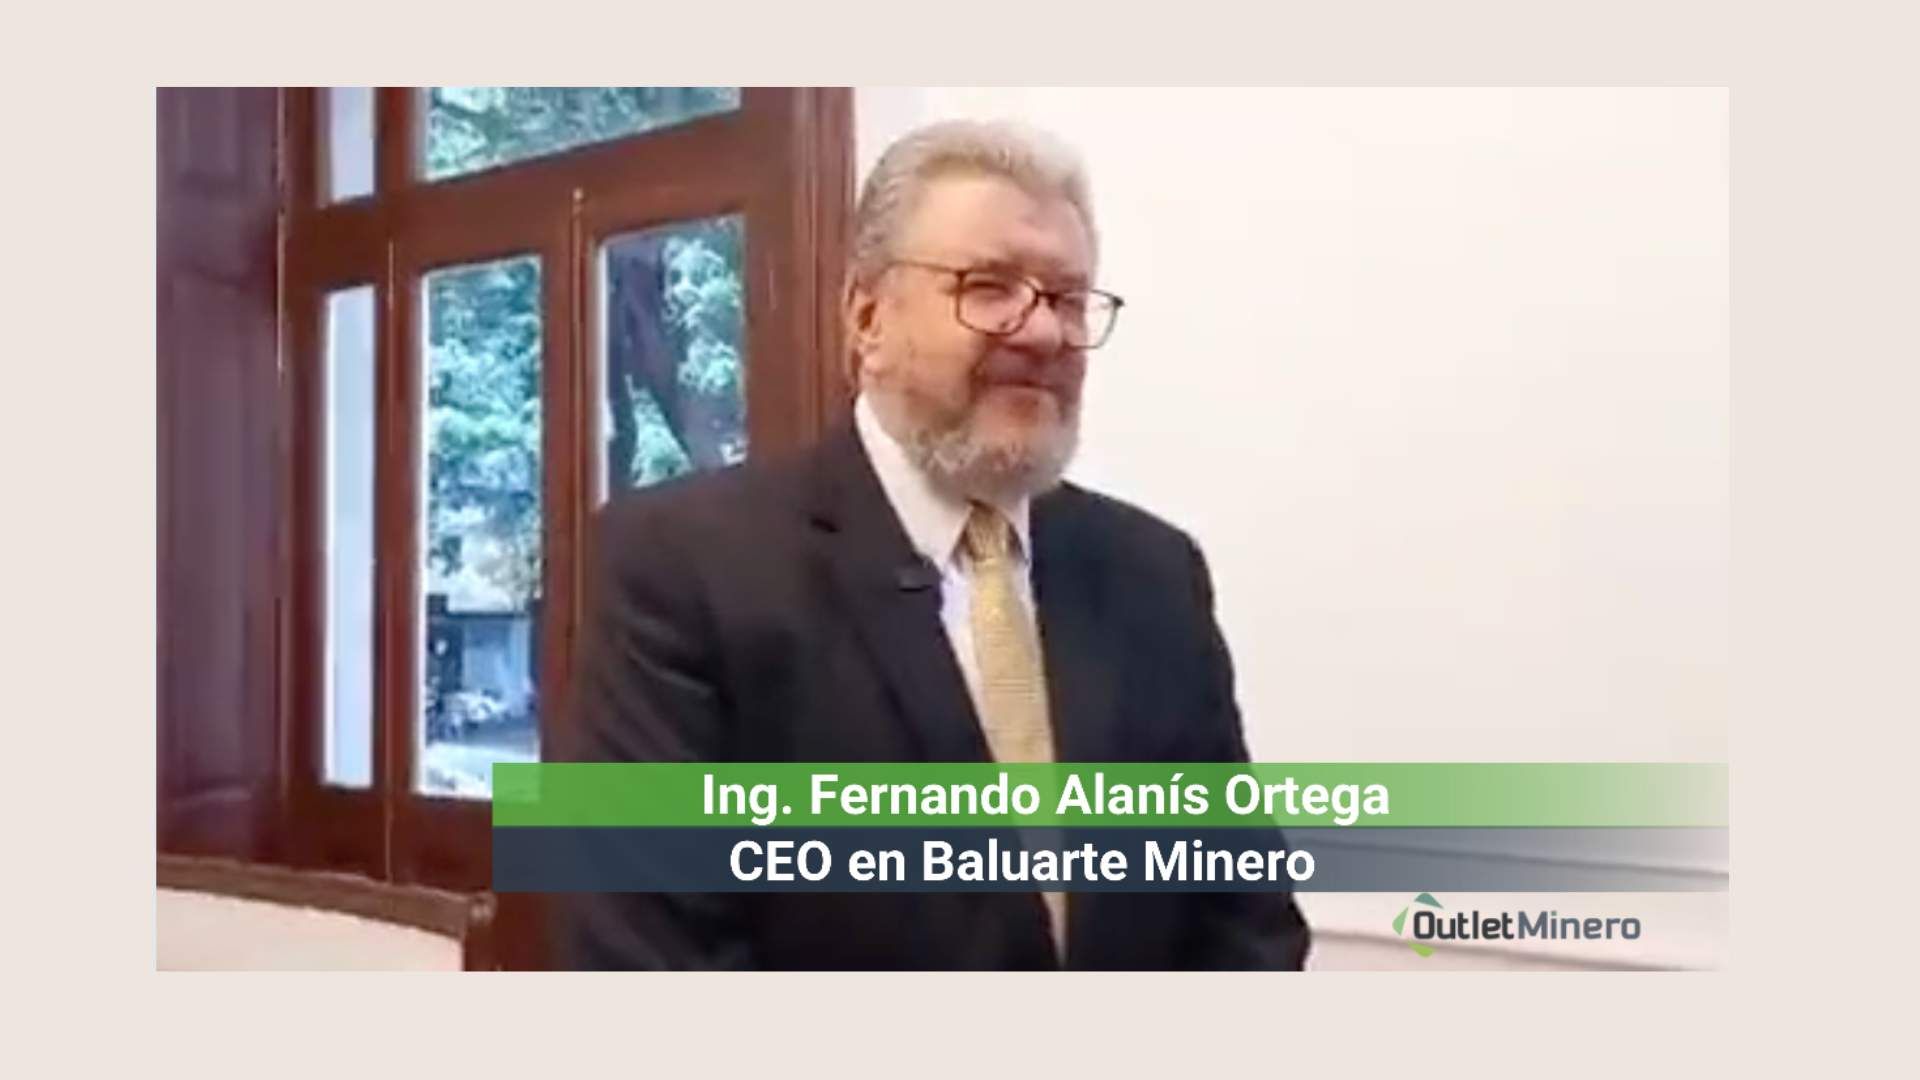 Fernando Alanís Ortega CEO en Baluarte Minero, Sello WiM, iniciativa que va a tener Eco en todo el sector minero.